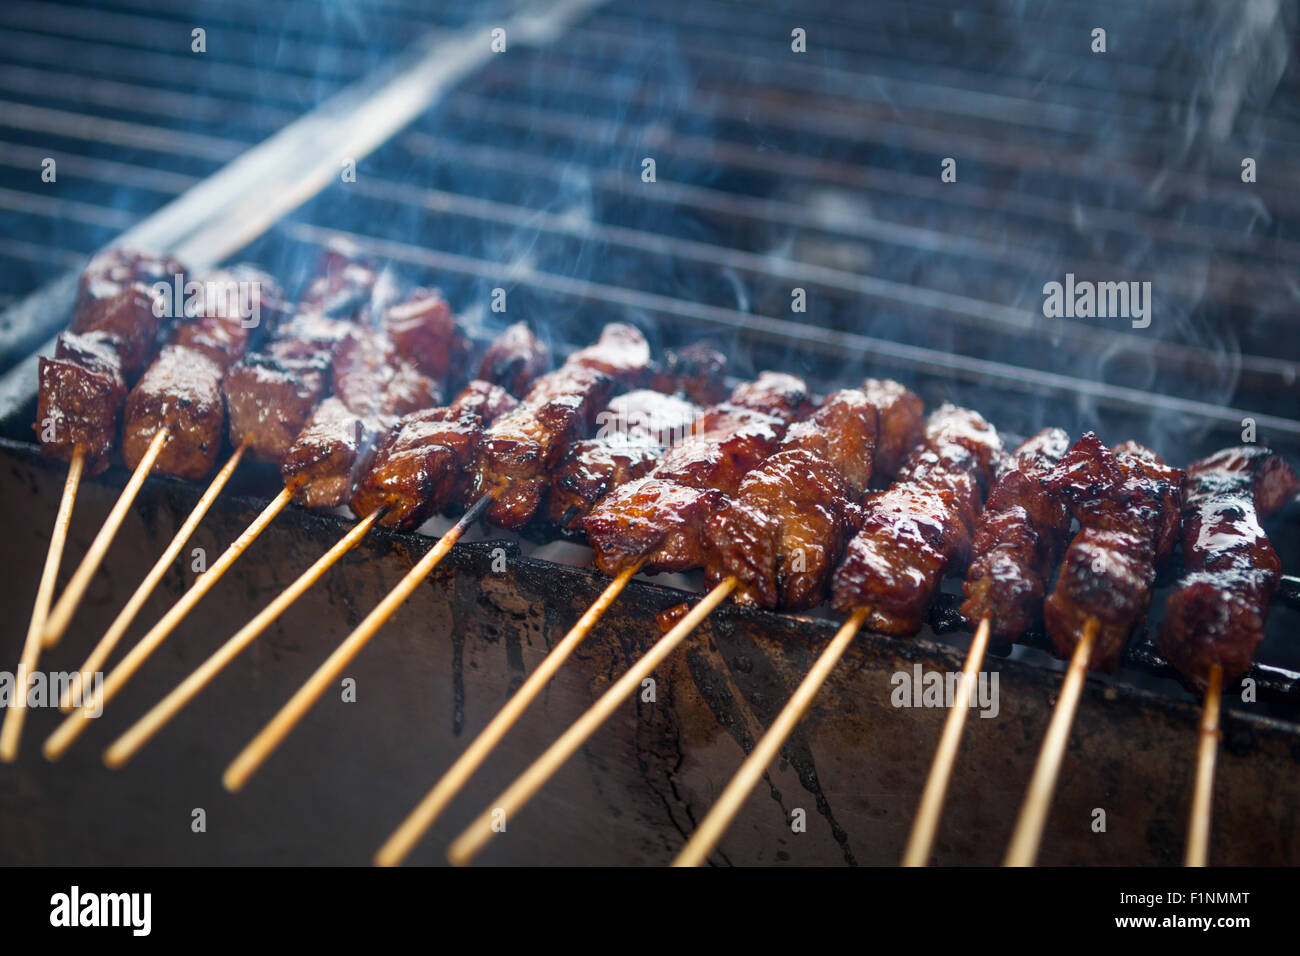 Abenteuerliche Kochen mit Satay Grillen im Freien auf einem Holzkohle Grill mit Rauch ausgelöst Stockfoto